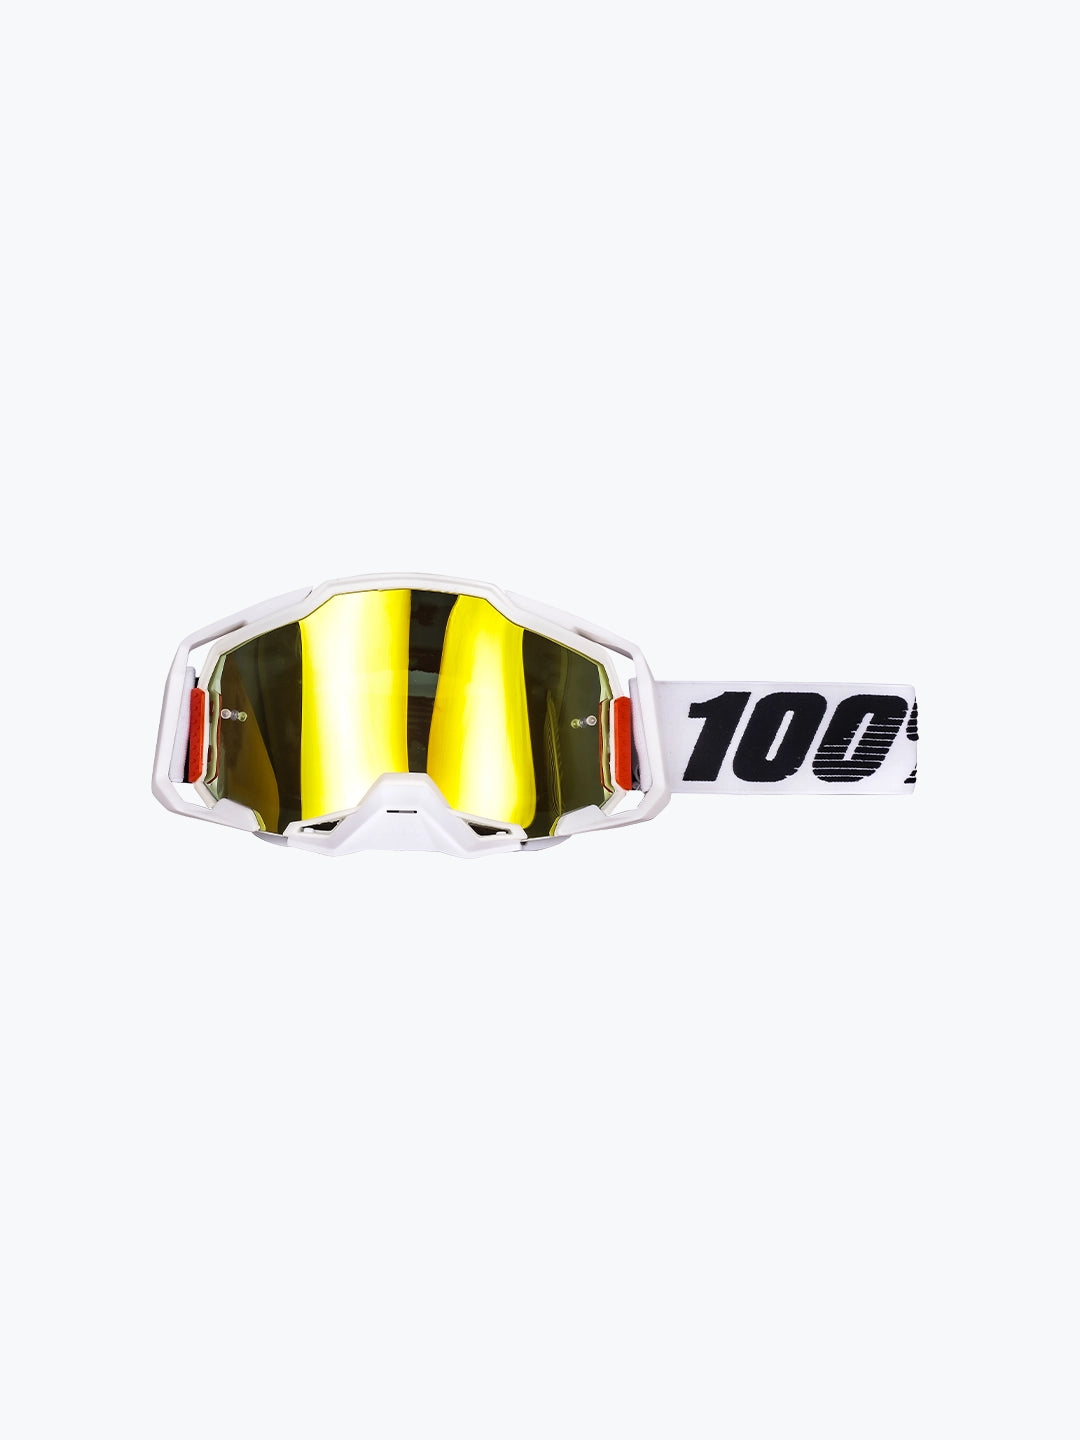 Goggles 100% - 147 White Yellow Tint